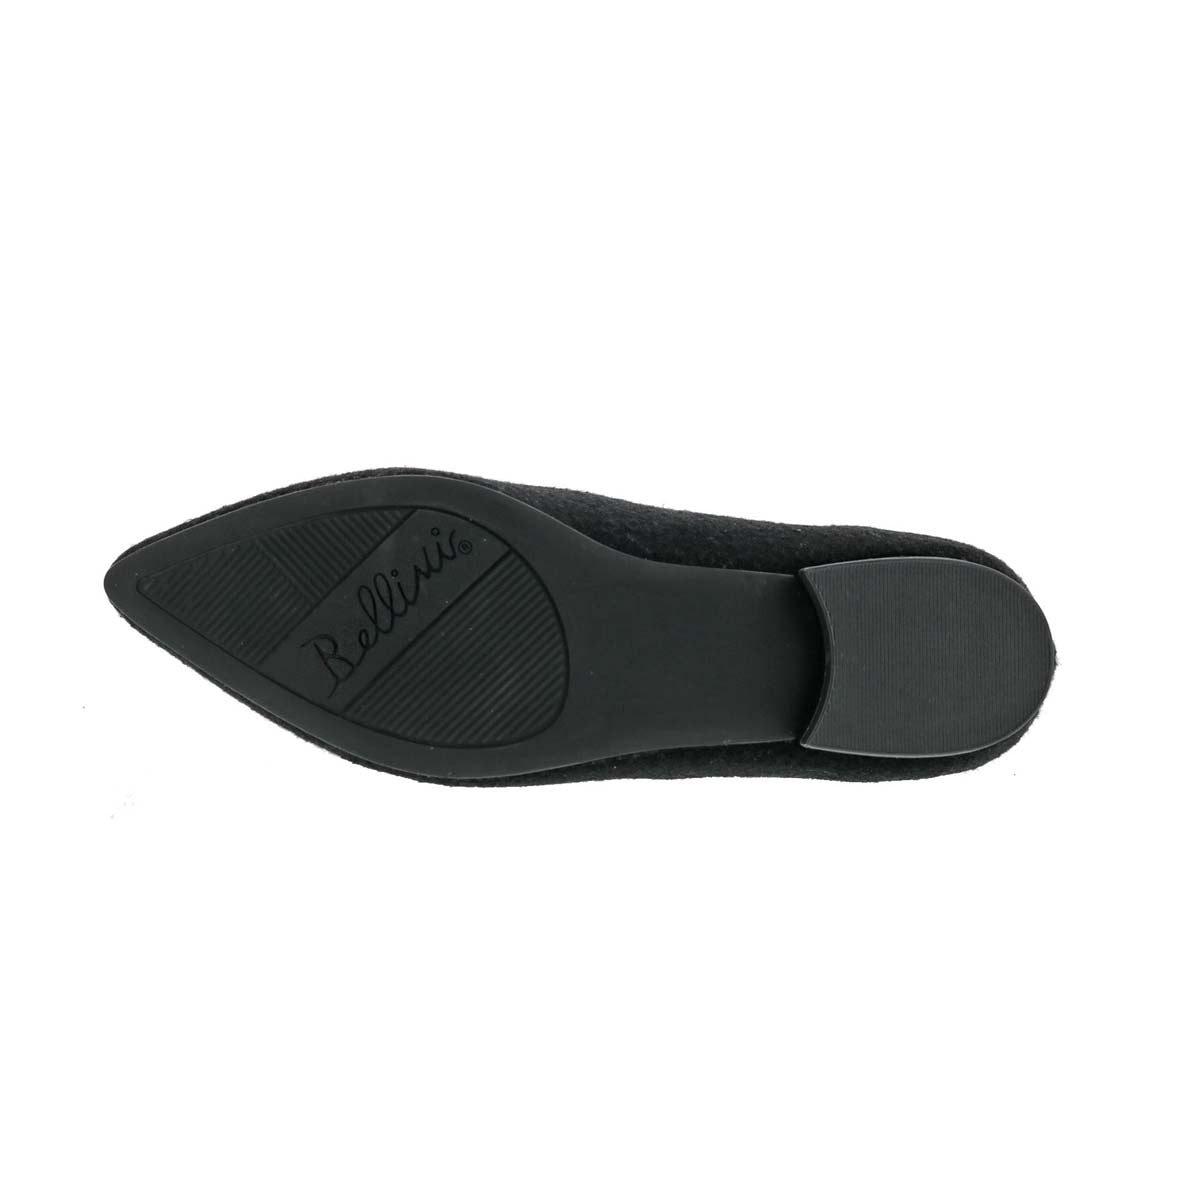 BELLINI FERRIS WOMEN FLAT SLIP-ON SHOE'S IN BLACK MUTLI WOOL - TLW Shoes